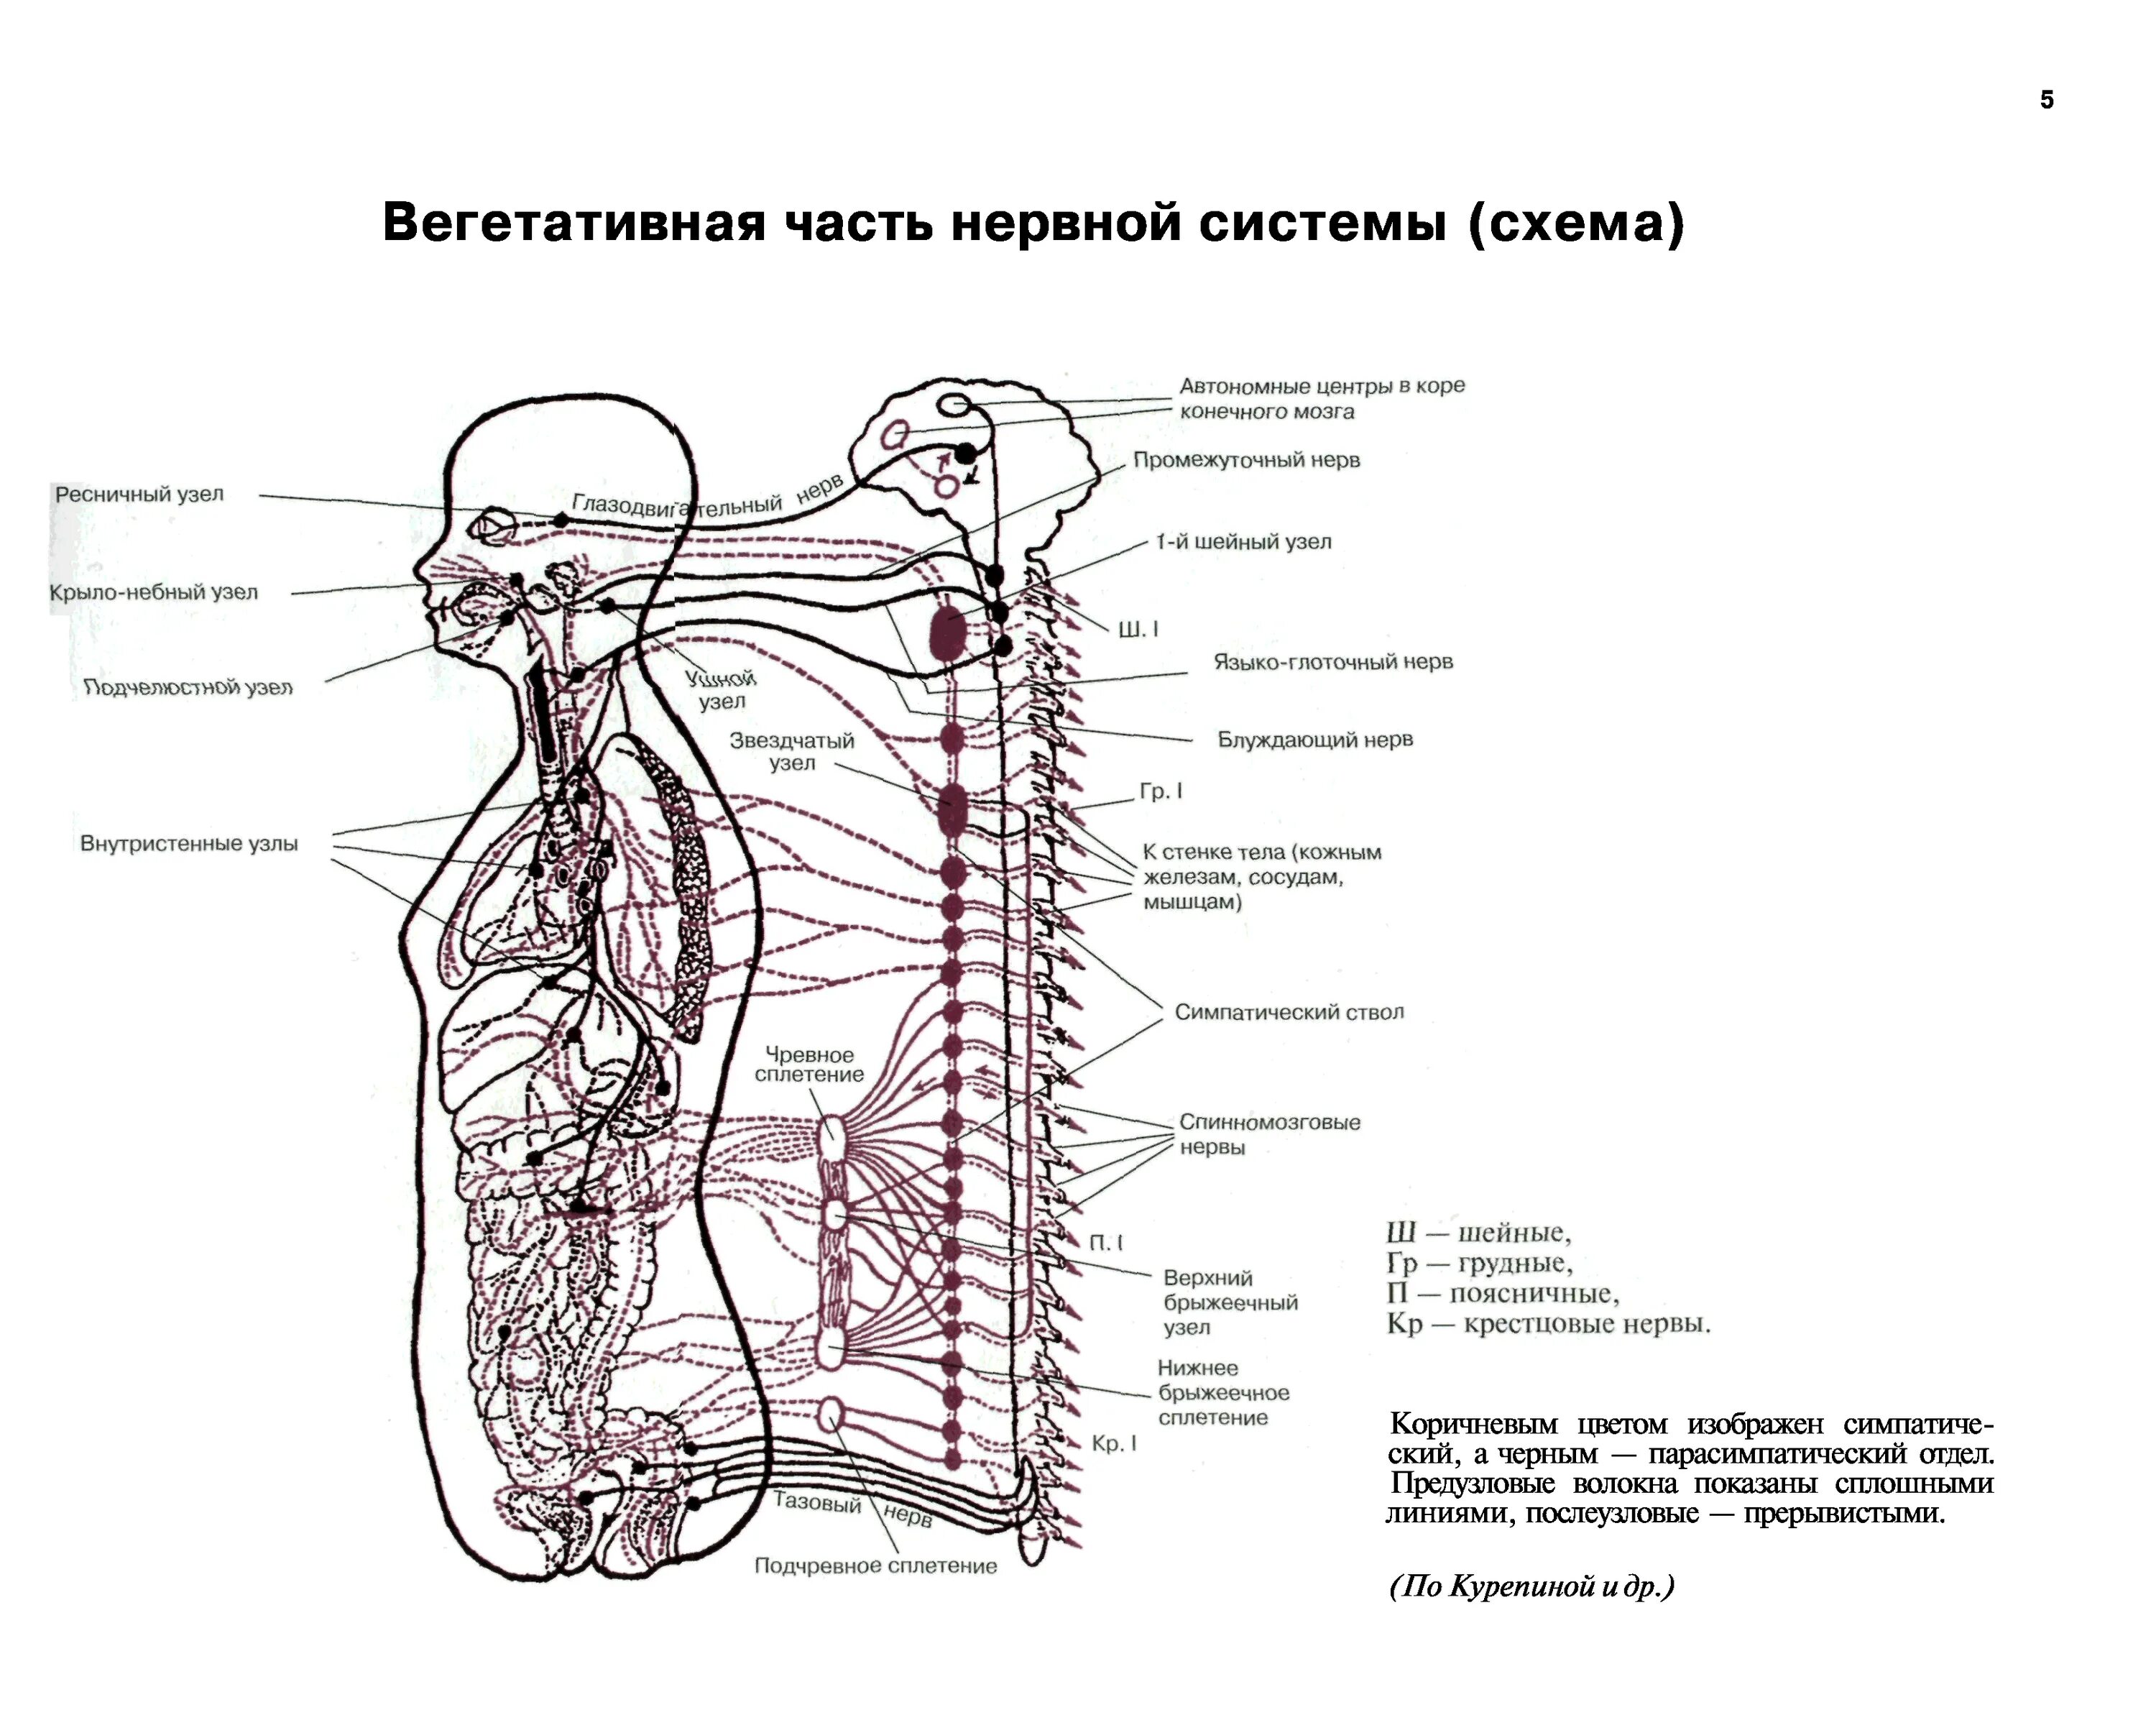 Вегетативная система человека схема. Схема вегетативной нервной системы человека. Вегетативная нервная система схема спинного мозга. Вегетативная часть нервной системы (схема). Промежуточные нервные узлы